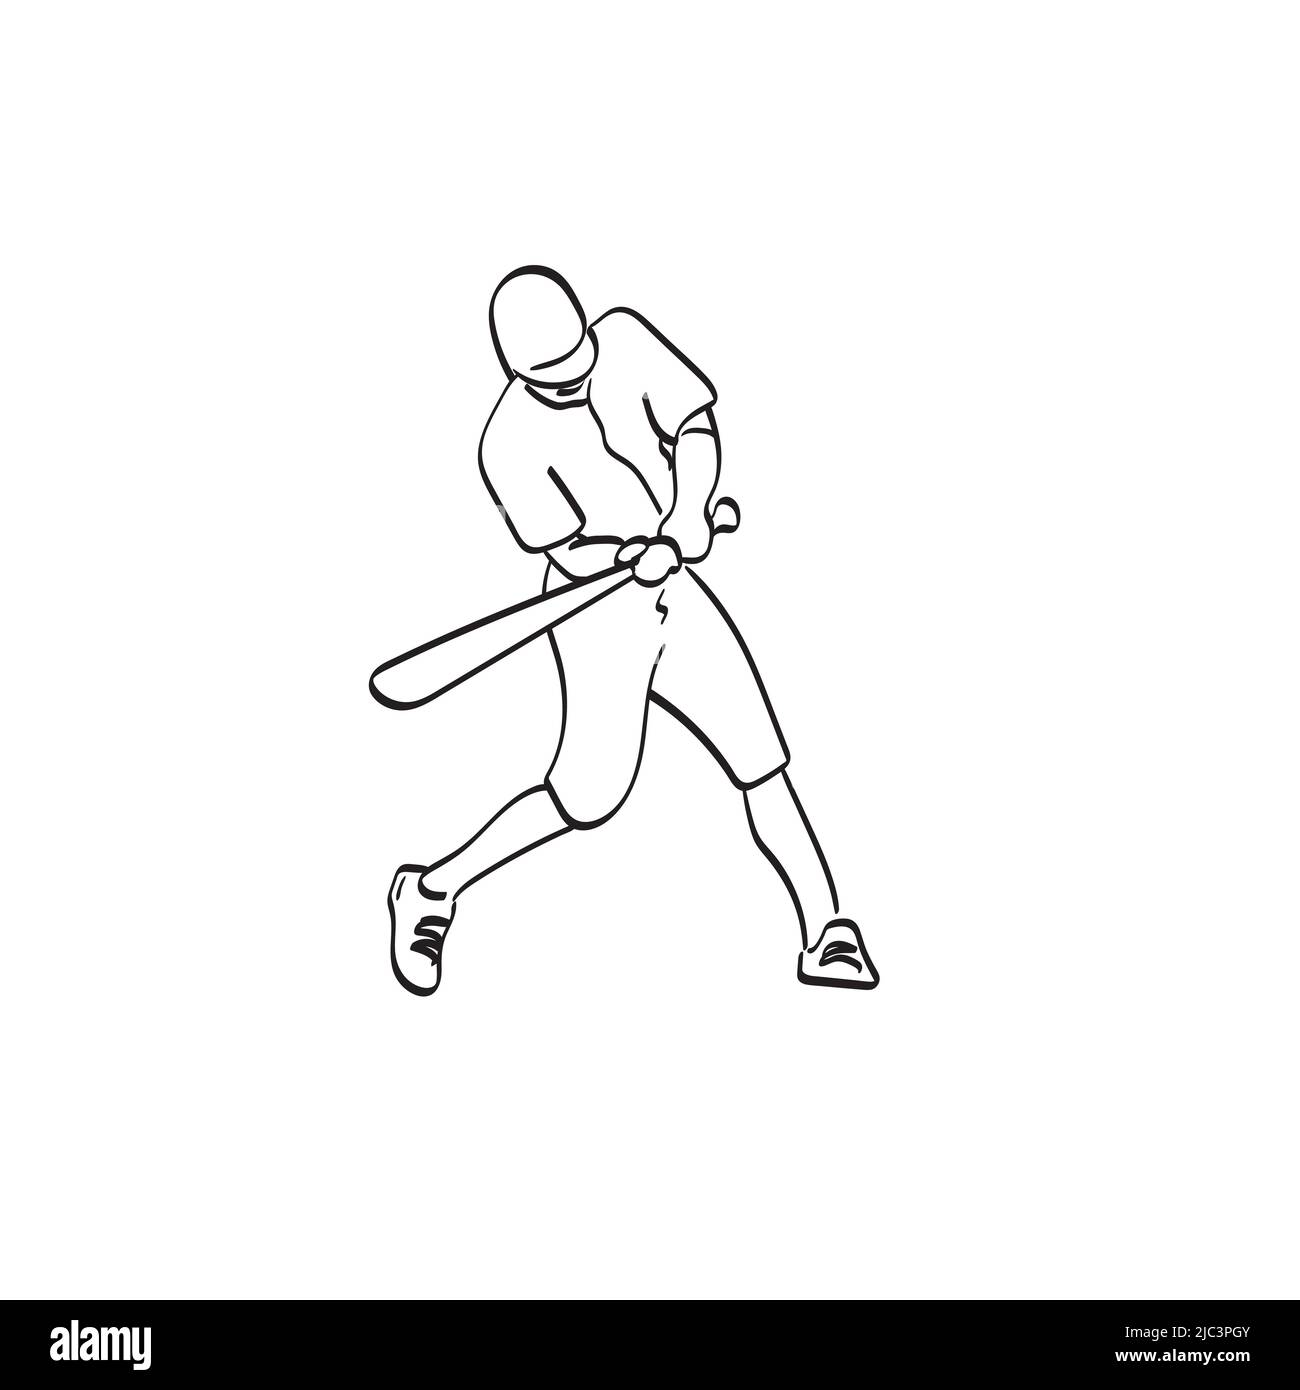 line art baseball batter hitting ball illustration vector hand drawn isolated on white background Stock Vector